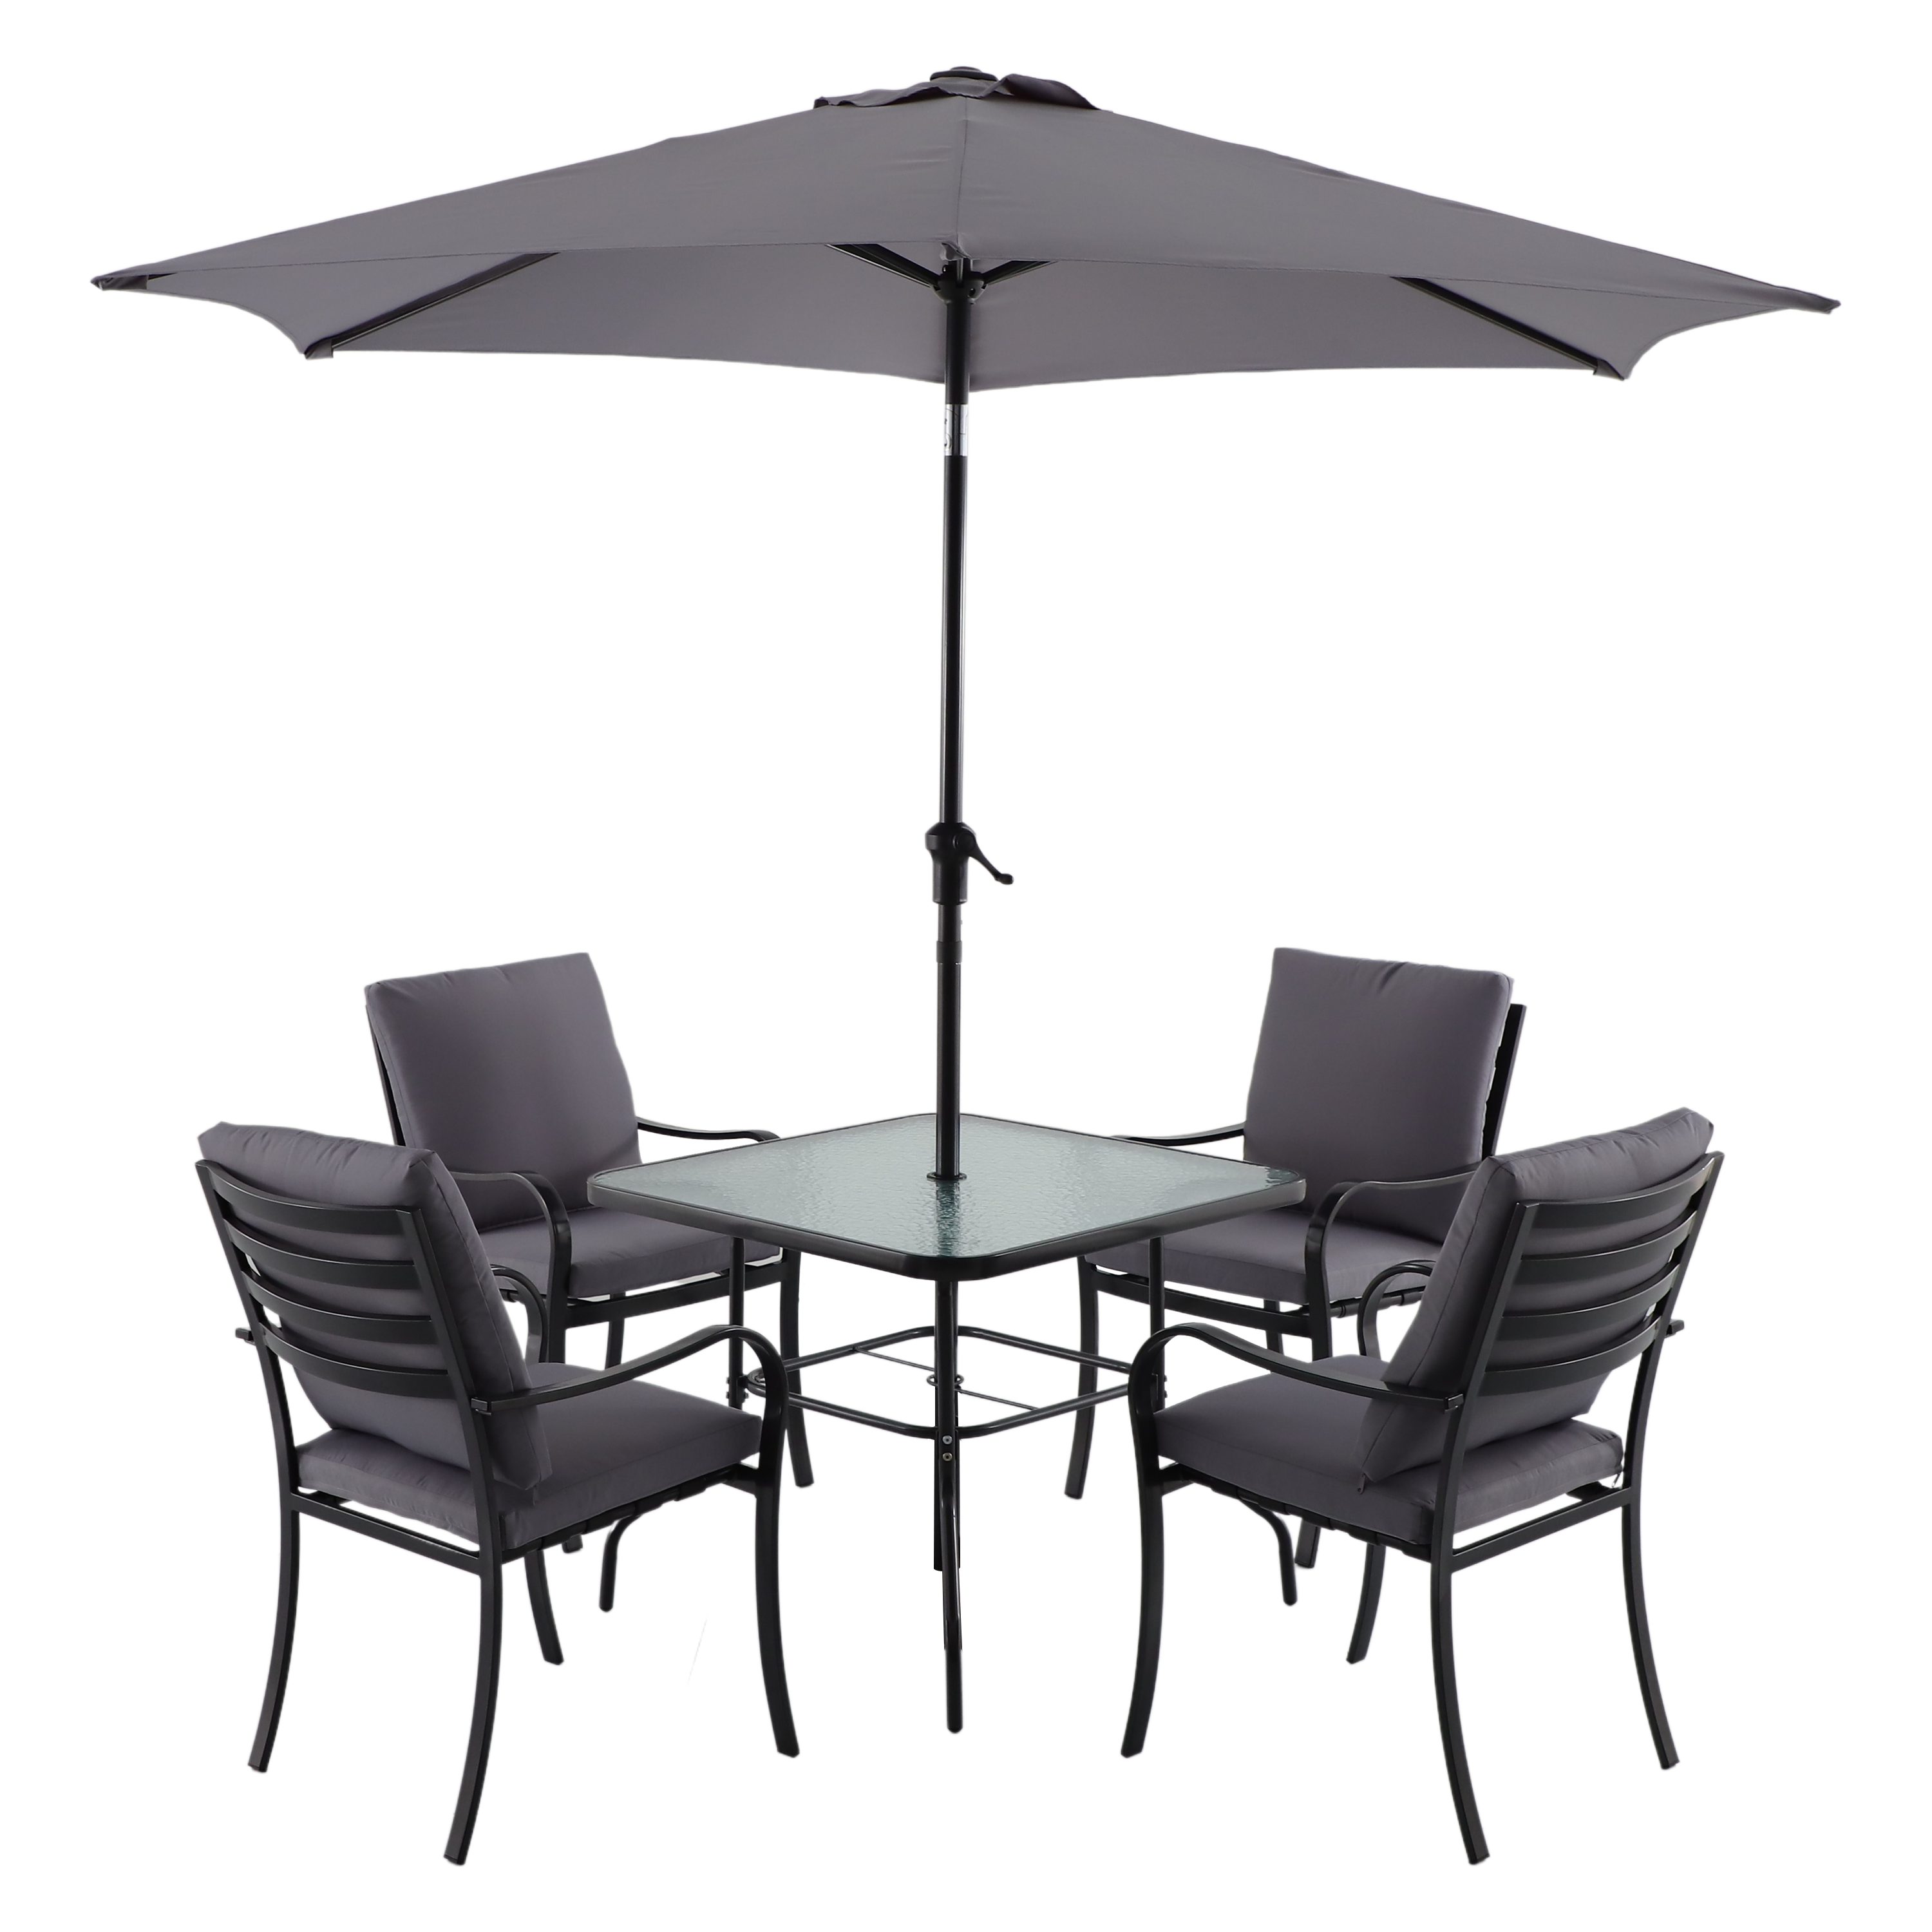 84252500 Набор садовой мебели Rono сталь/полиэстер/стекло темно-серый: стол, 4 кресла и зонт STLM-0047504 NATERIAL